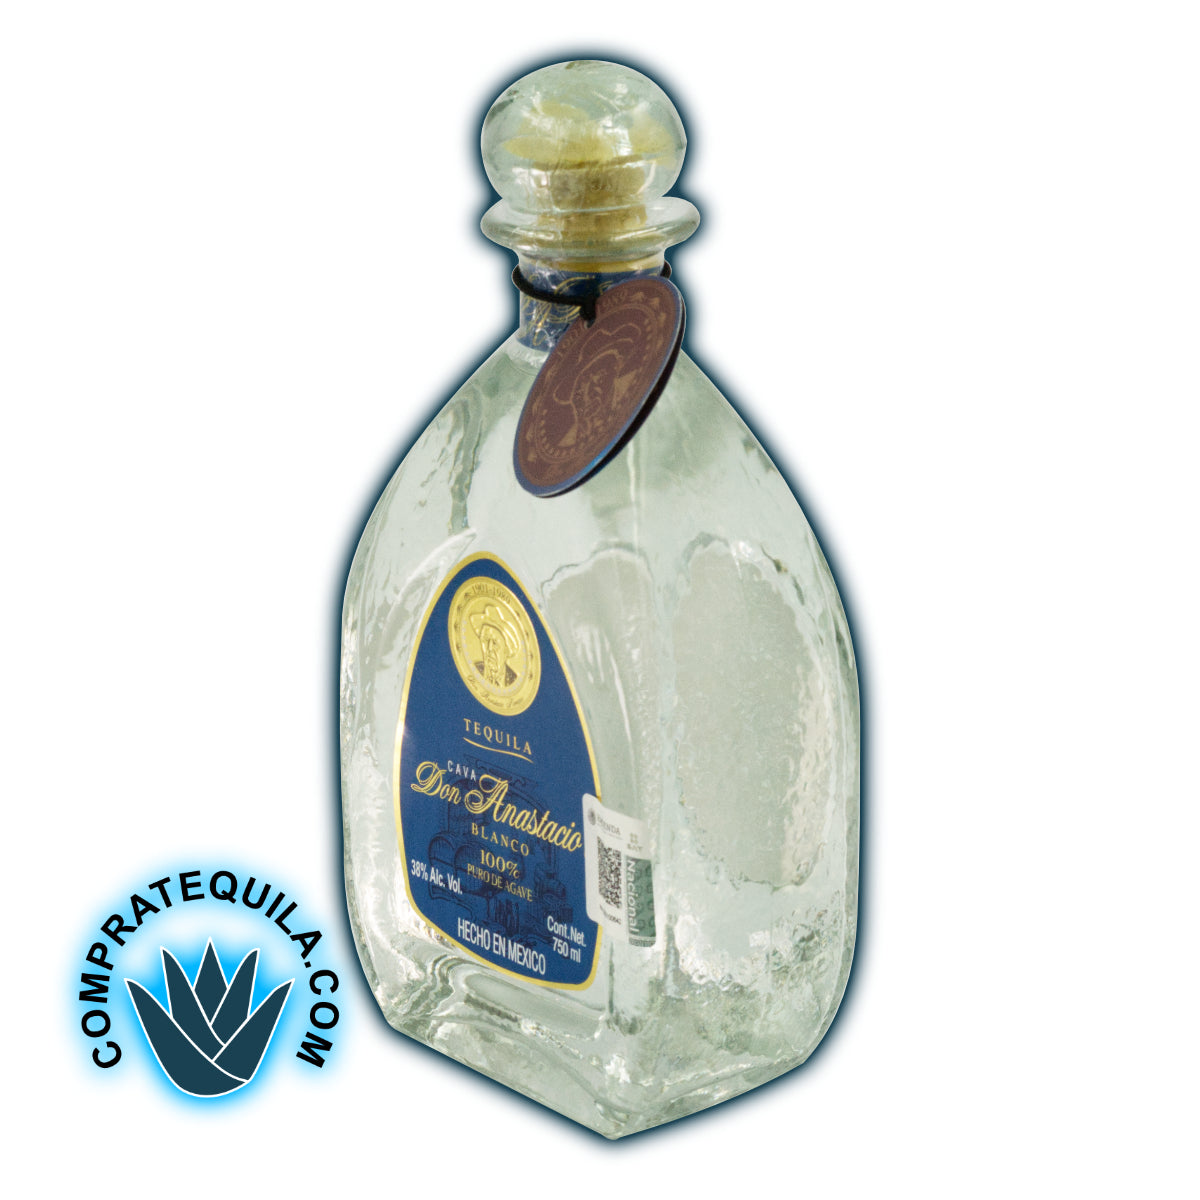 Tequila Don Anastacio Blanco: La perfección del sabor en cada sorbo, disponible en Compratequila.com